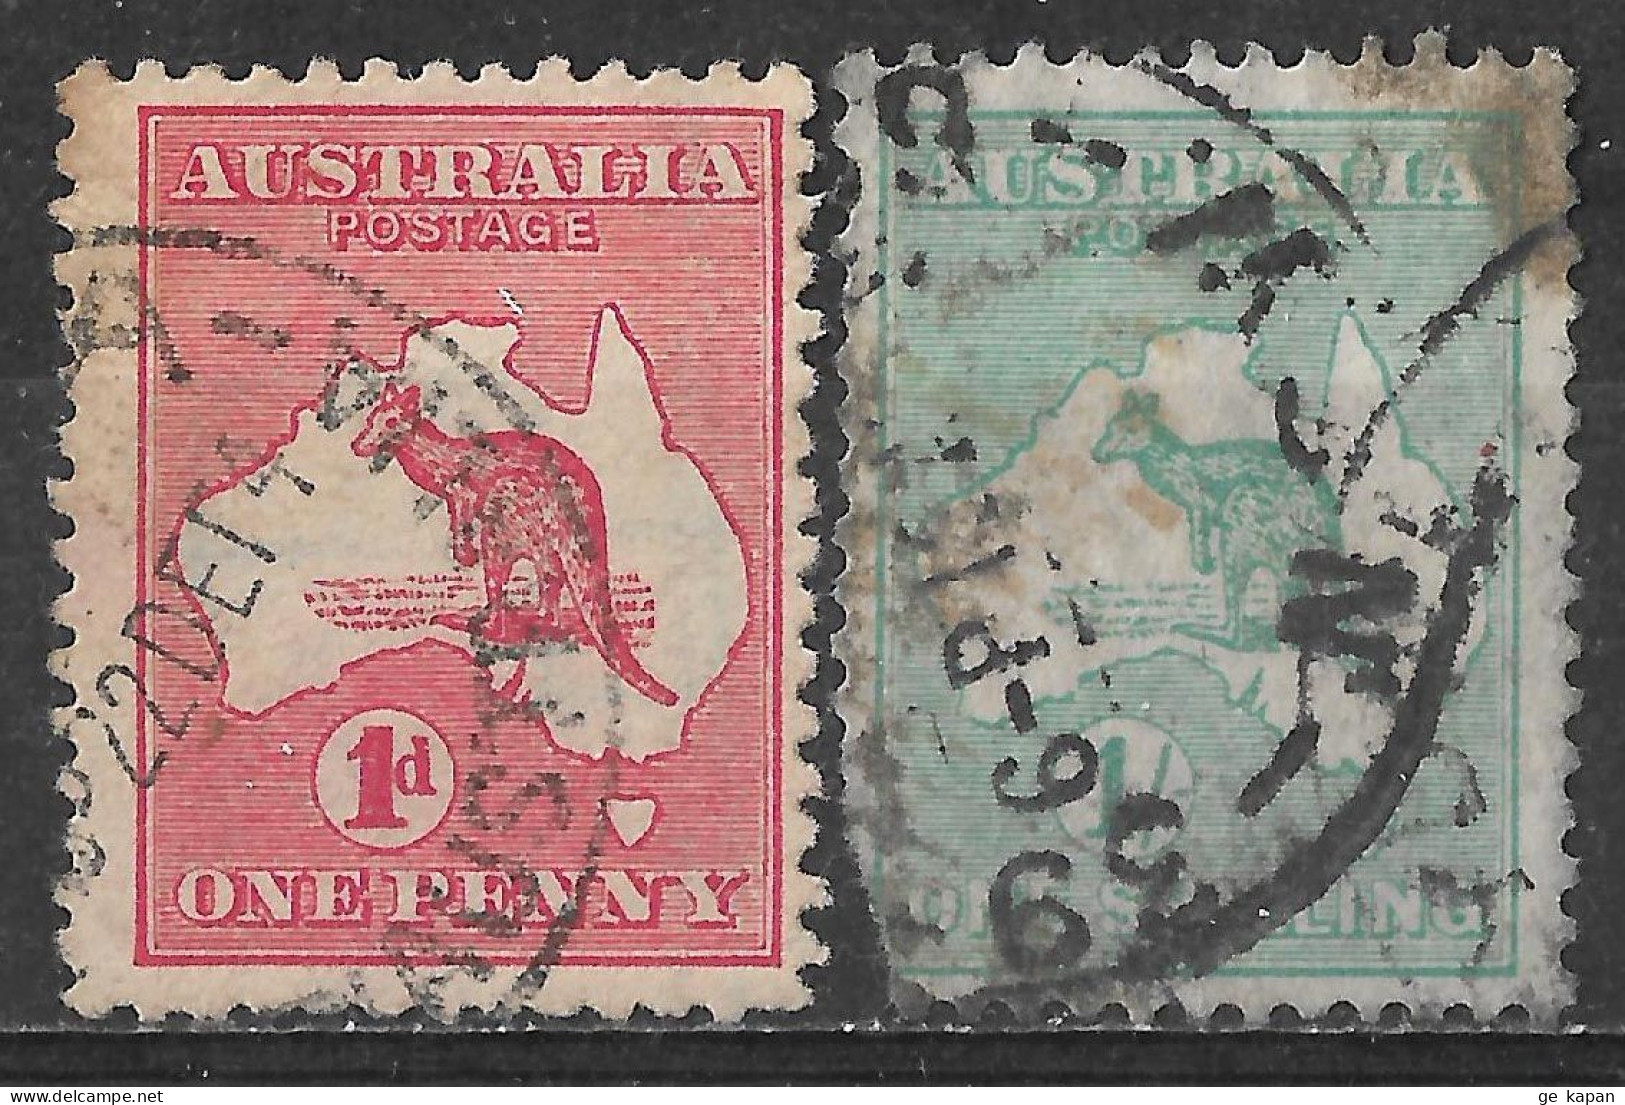 1913,1916 AUSTRALIA Set Of 2 USED STAMPS (Michel # 2,51) CV $13.50 - Oblitérés